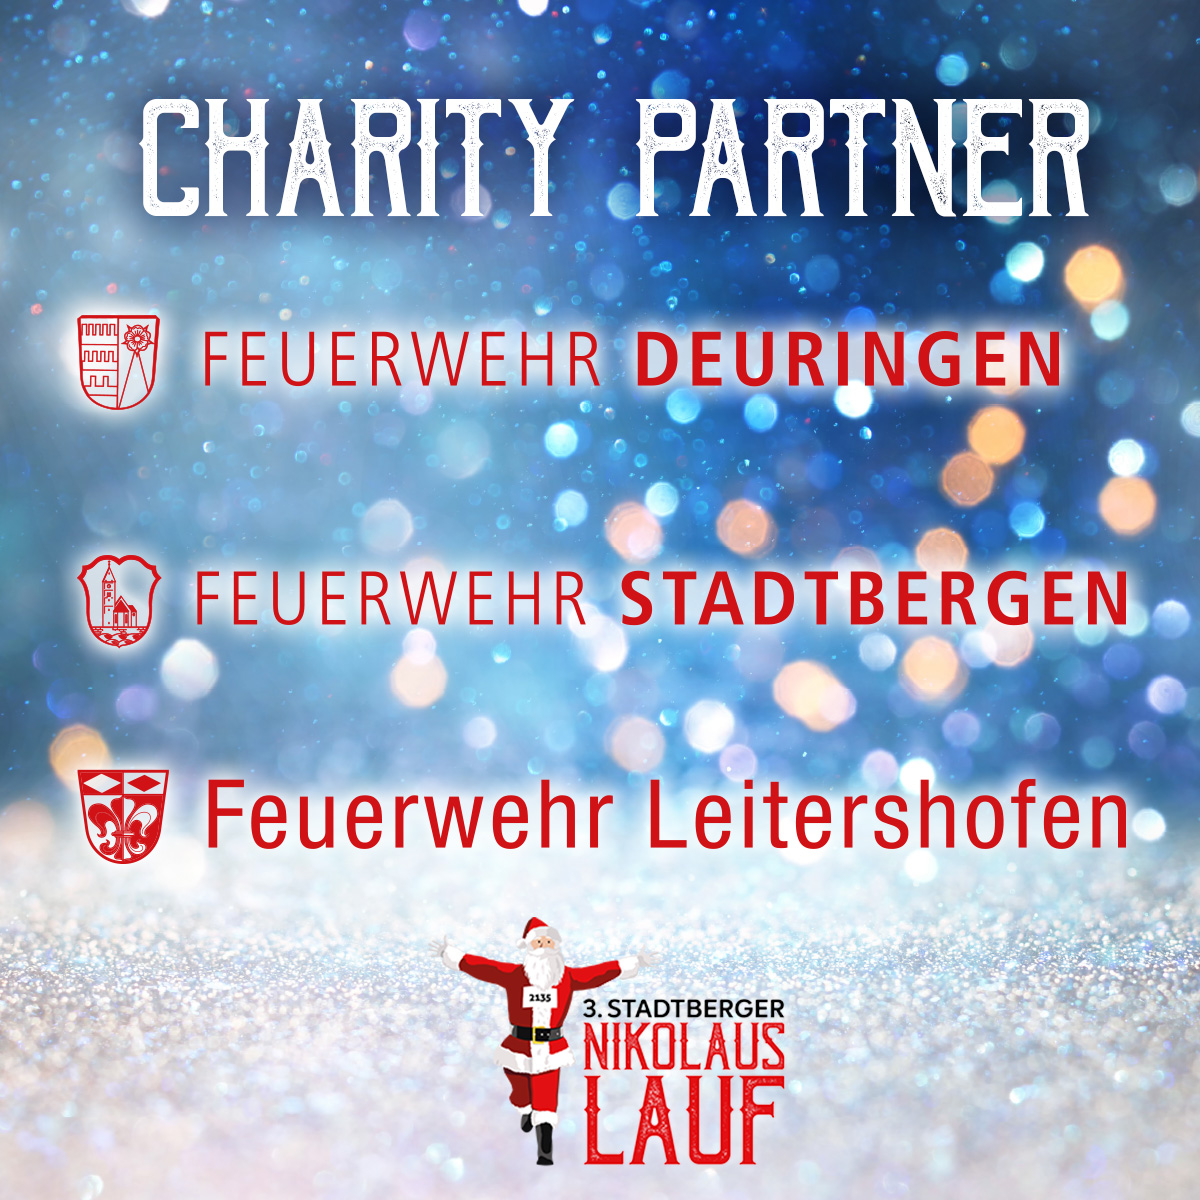 Charity Partner Jugendfeuerwehr